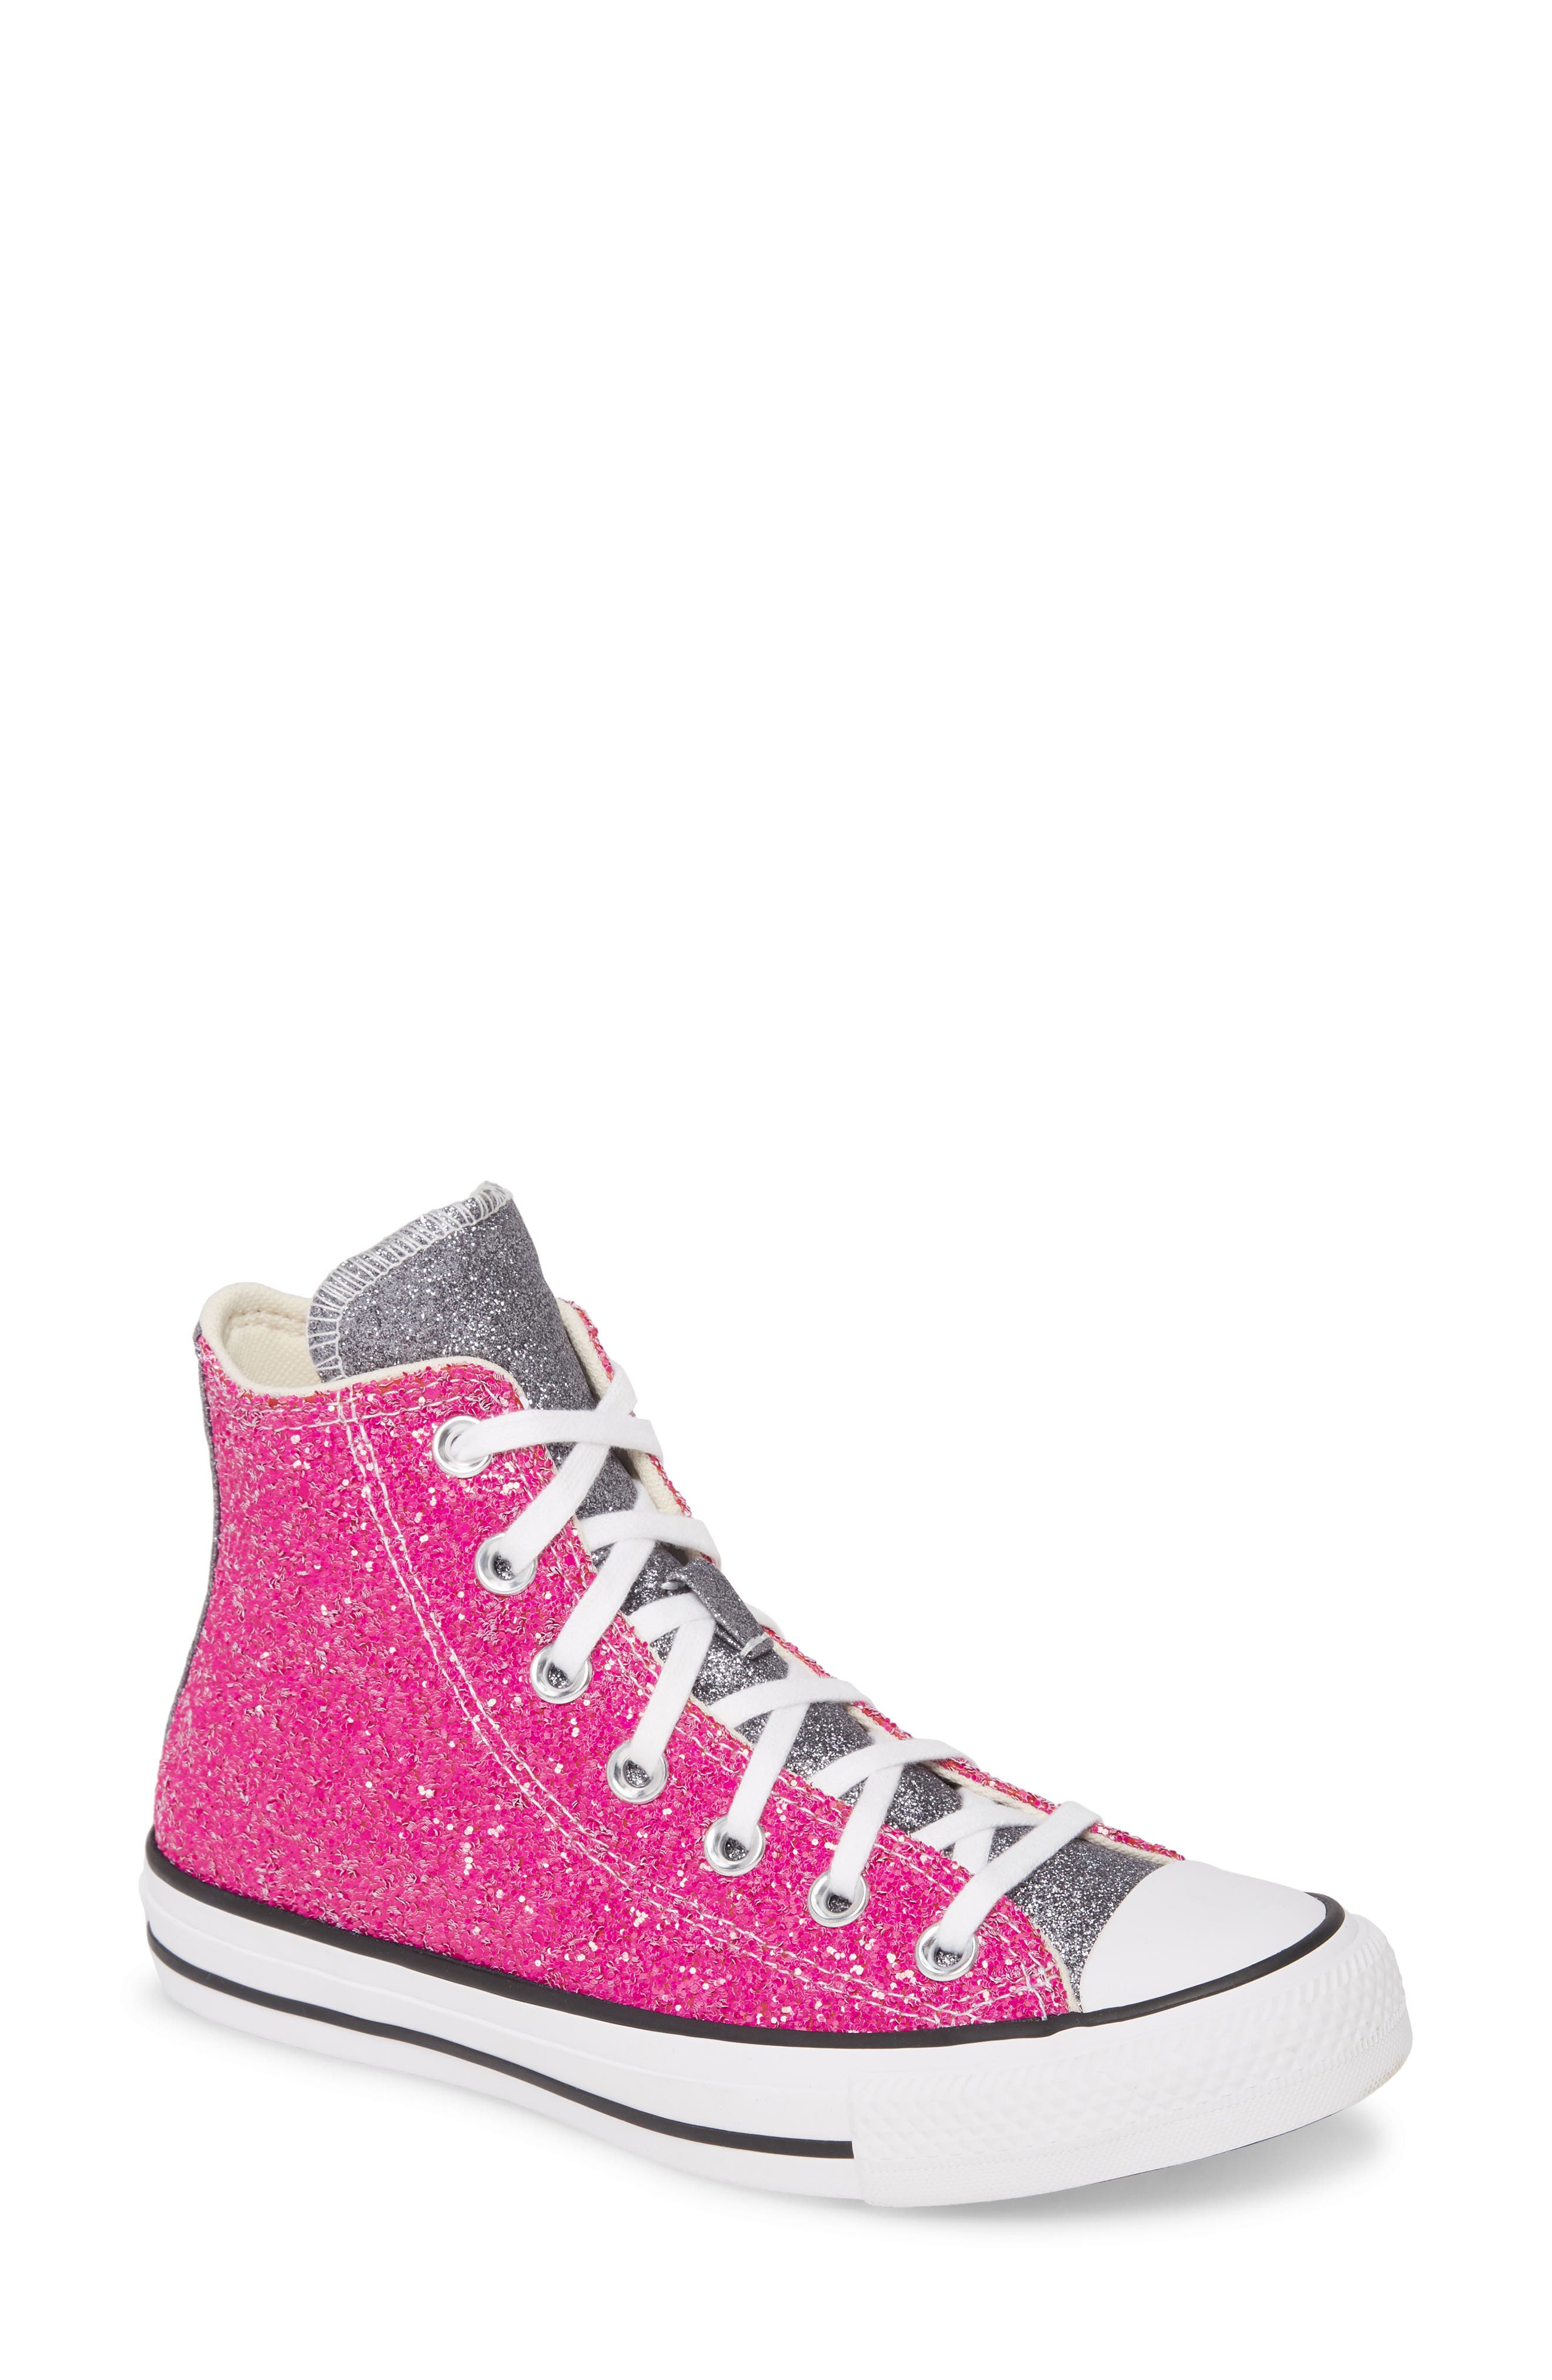 converse pink glitter high tops